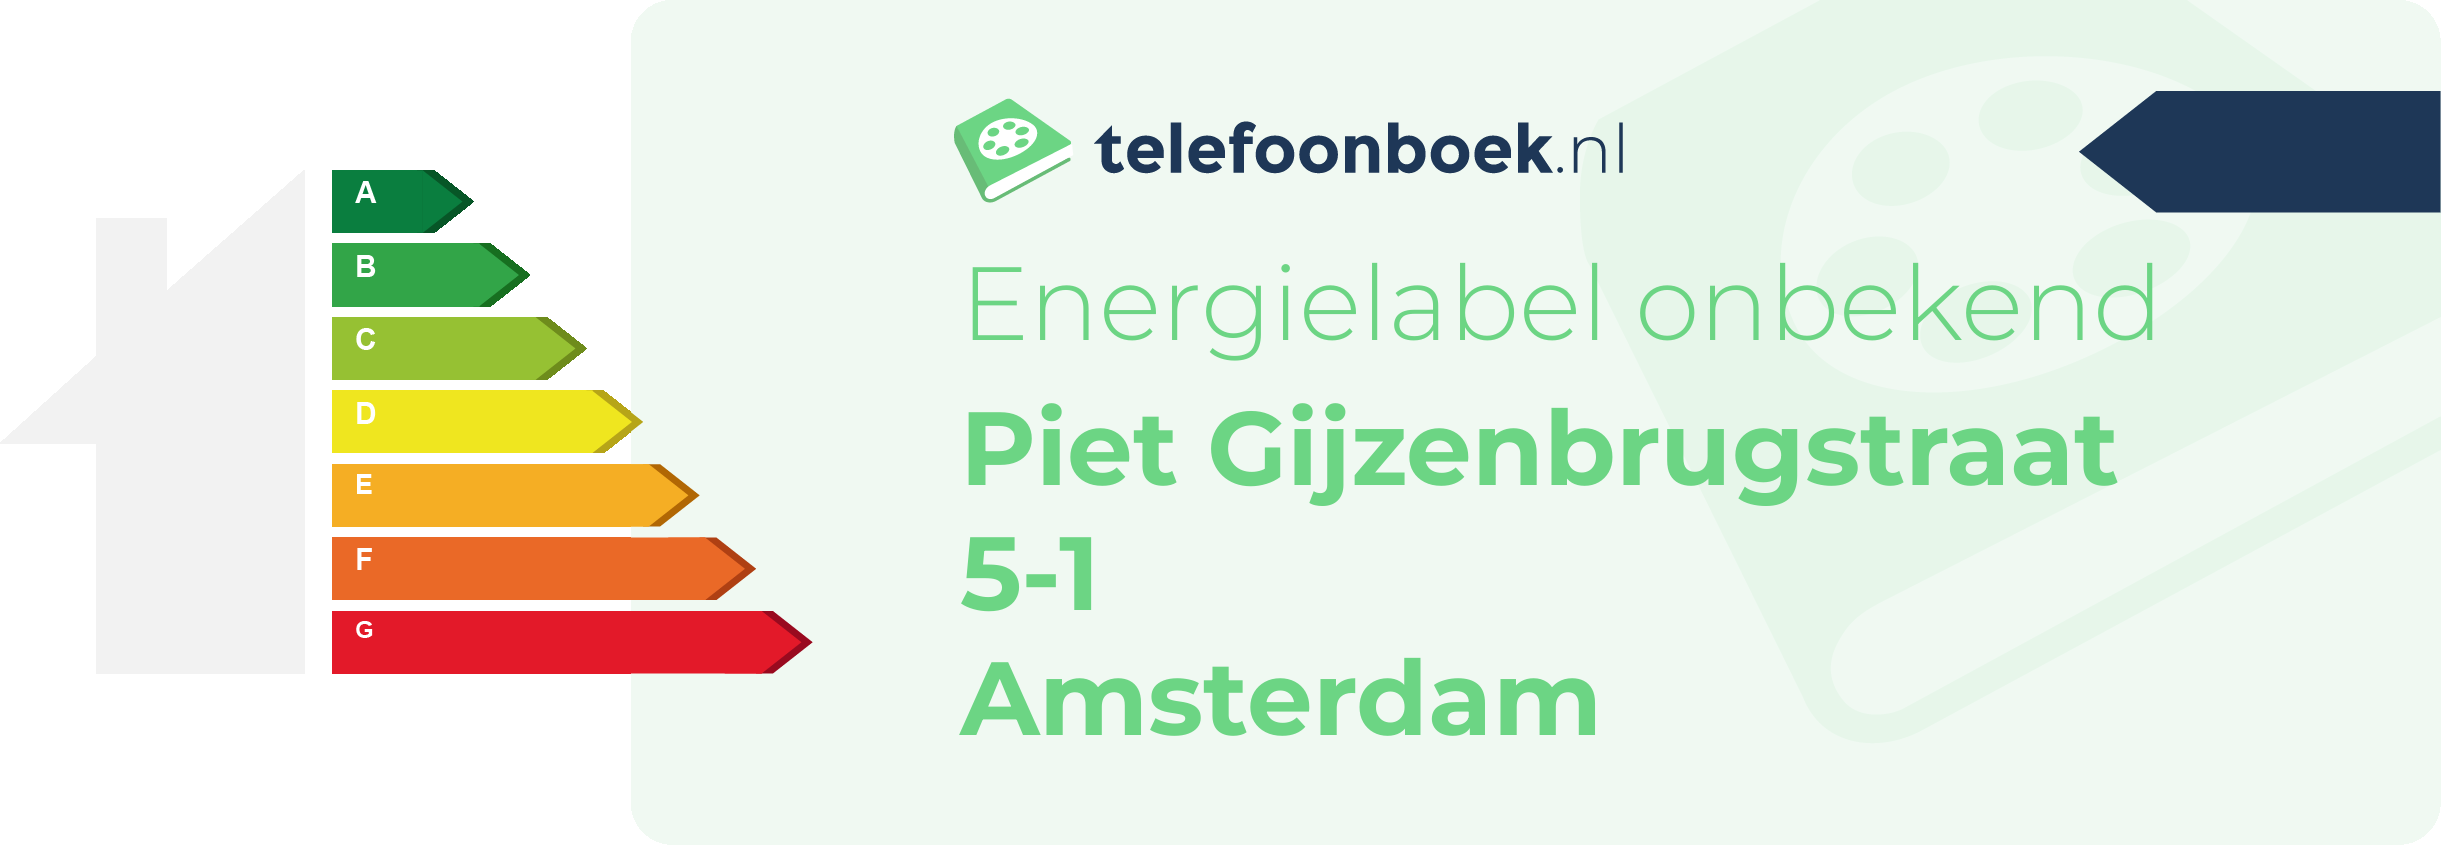 Energielabel Piet Gijzenbrugstraat 5-1 Amsterdam